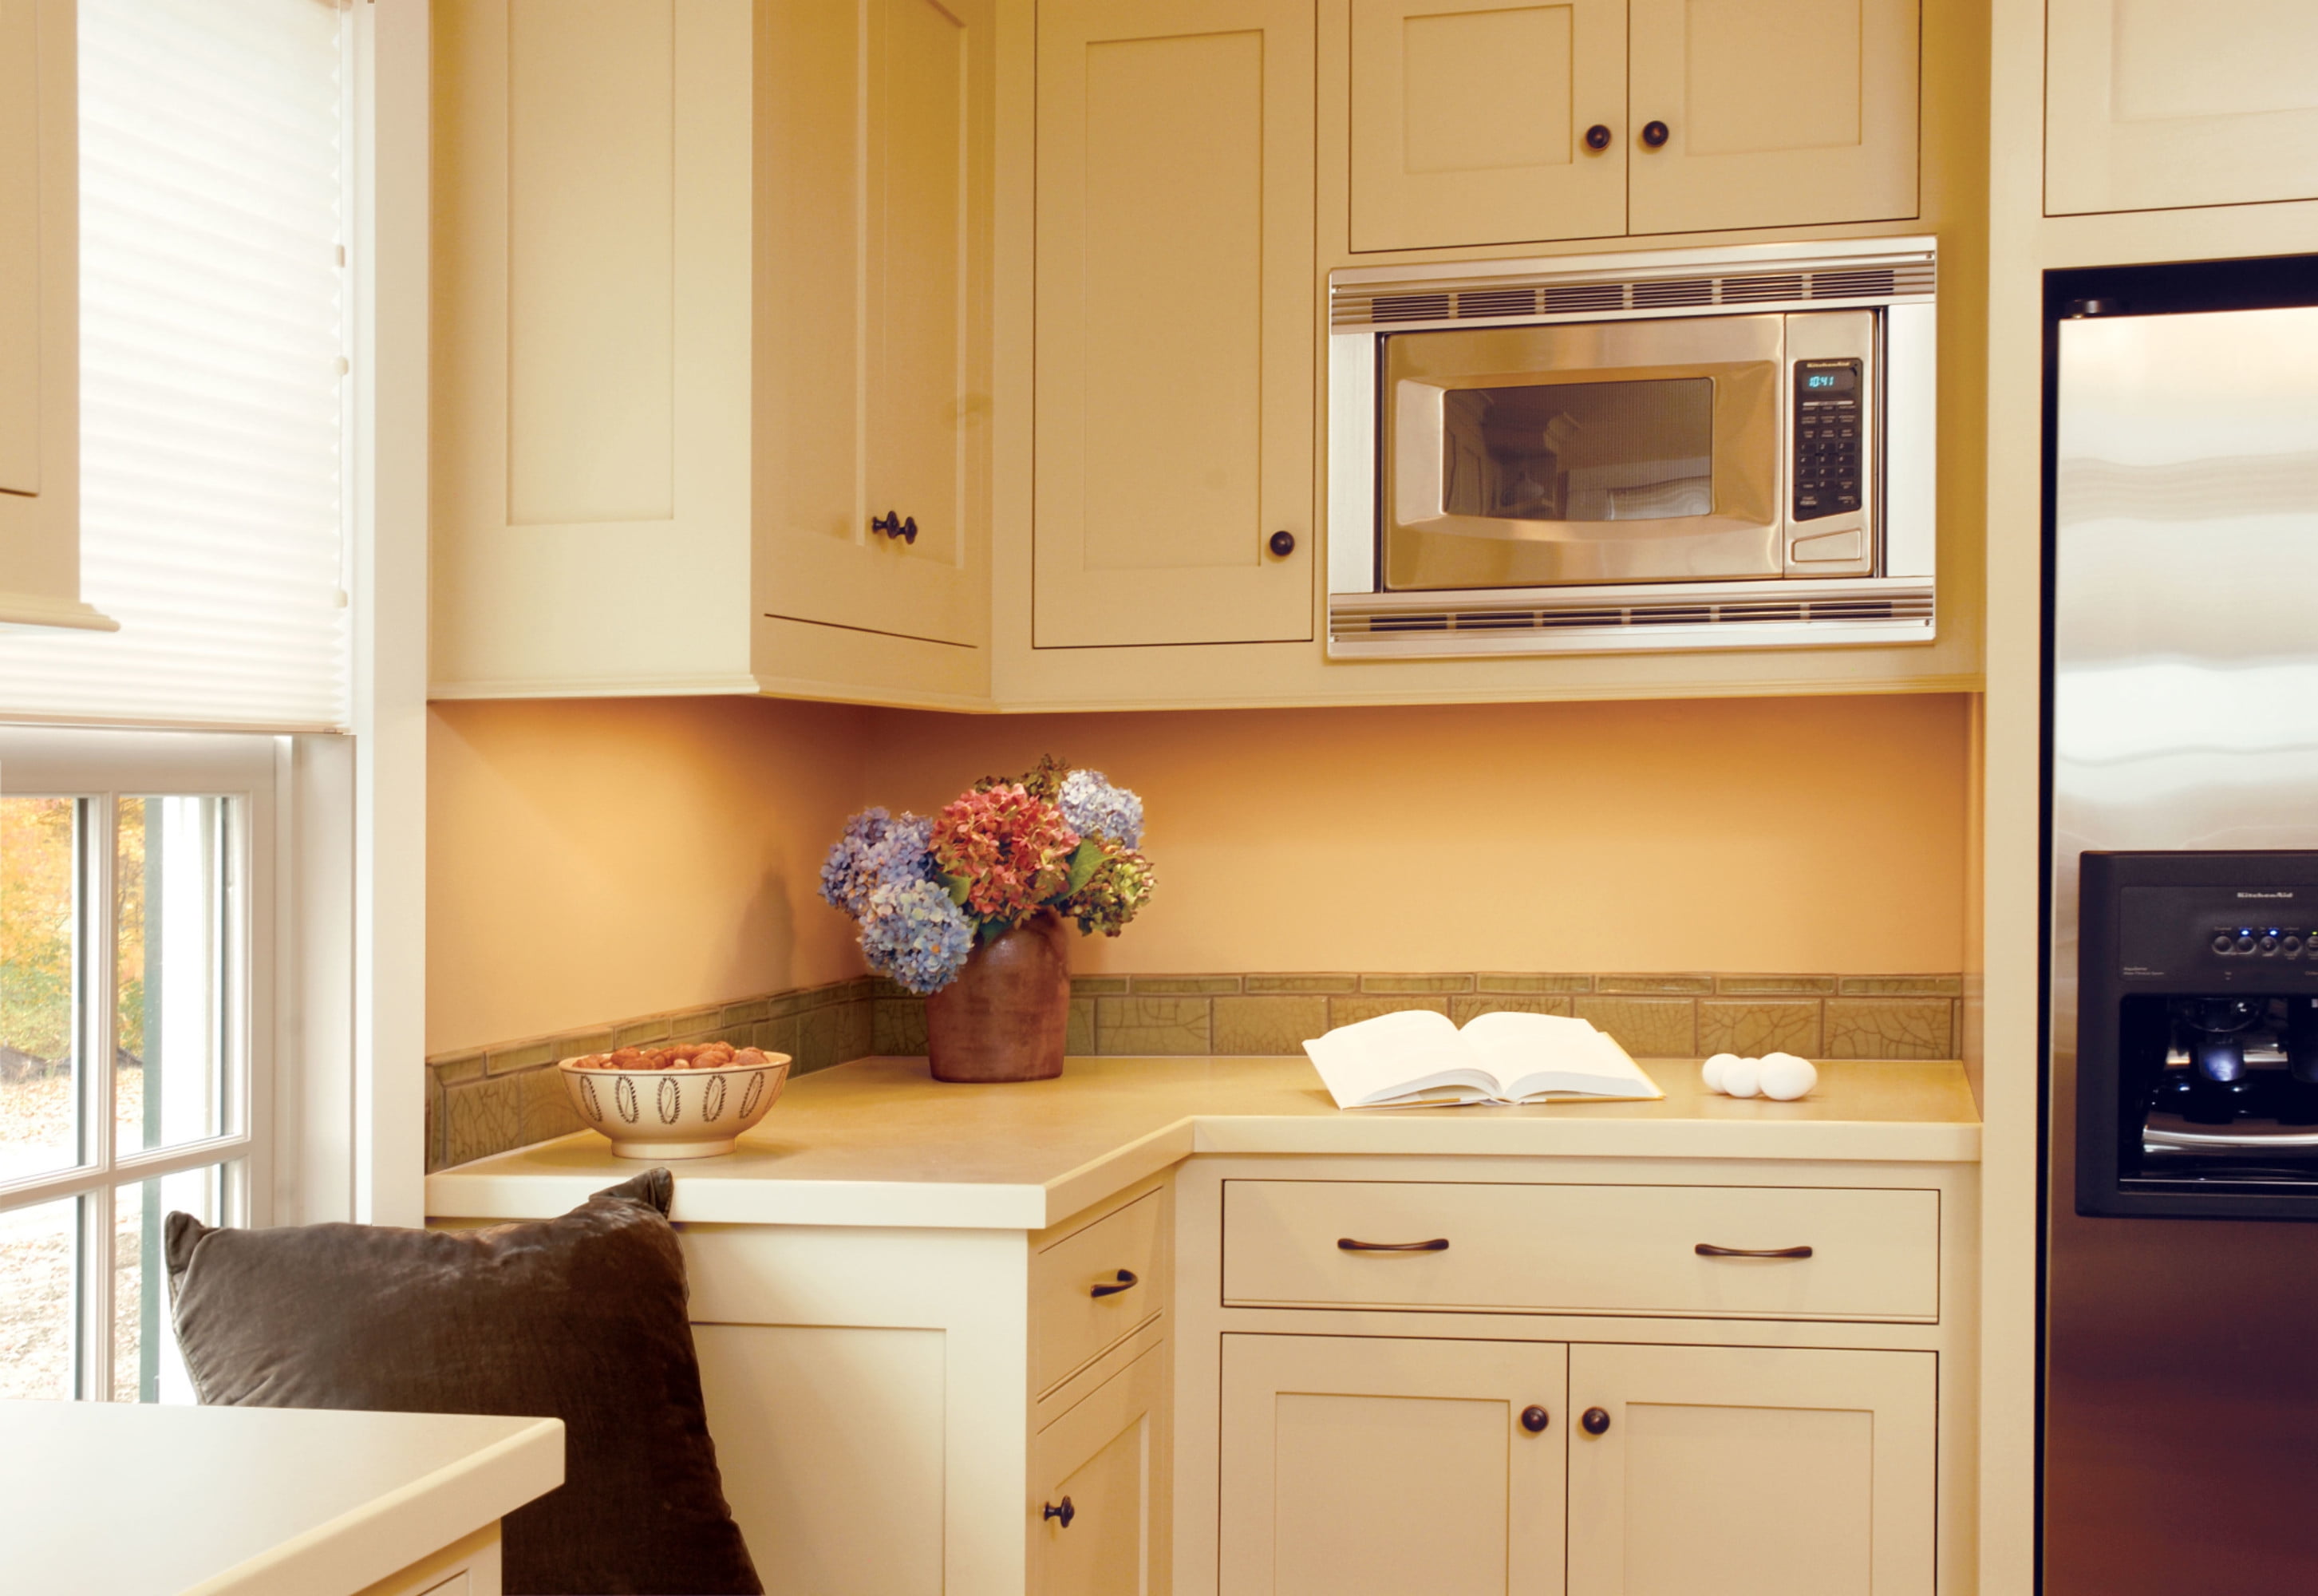 Heritage Cup Handle Kitchen/Bedroom/Cabinet/Door/Cupboard/Drawer 